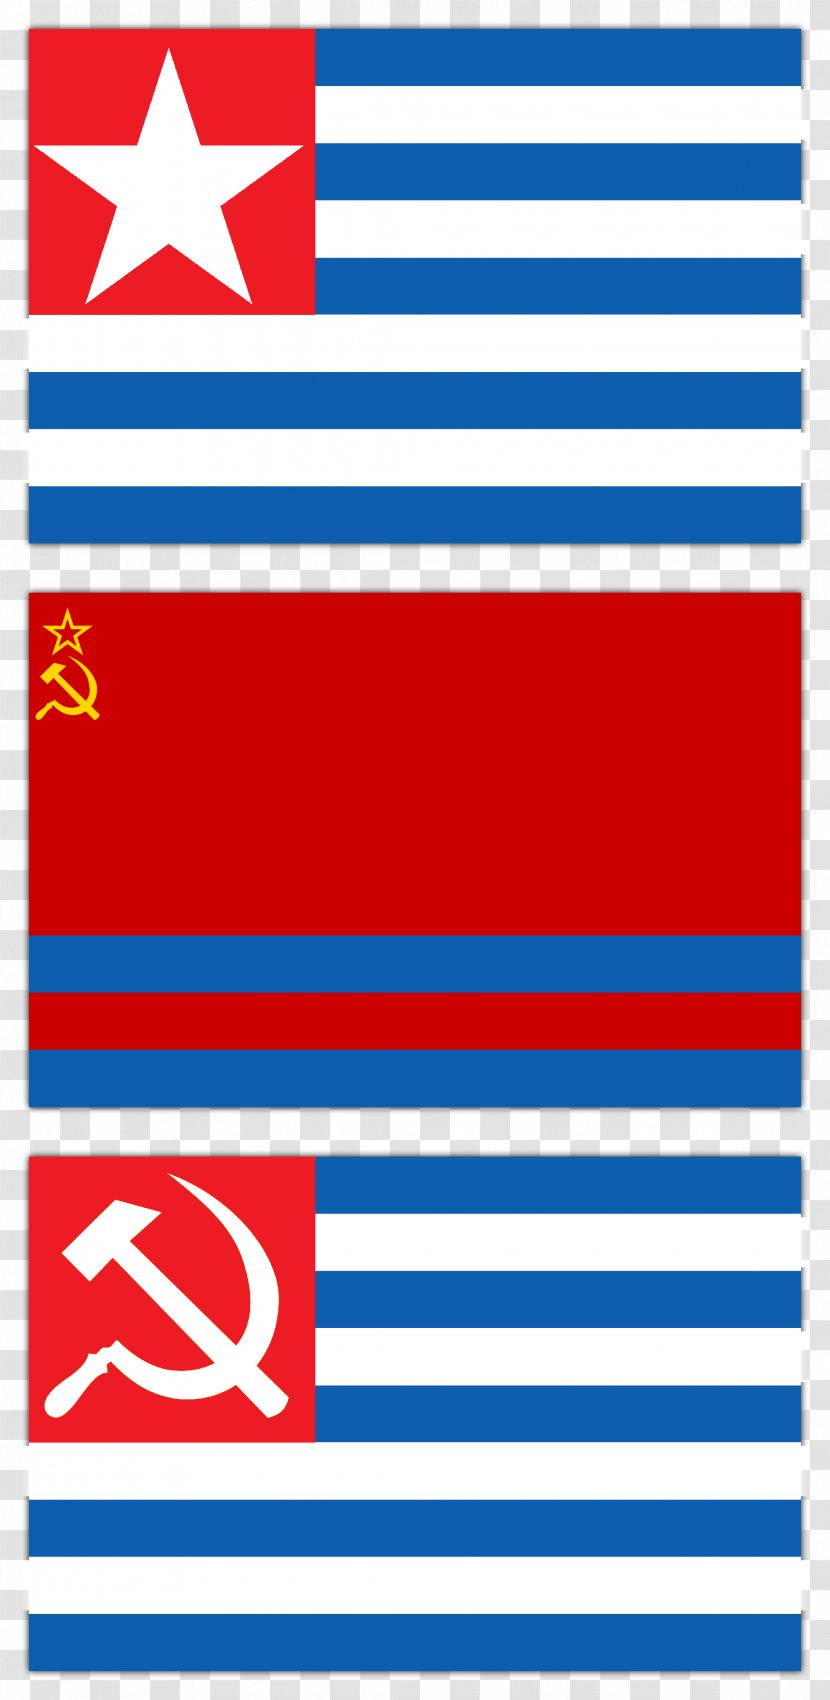 Greece Greek Civil War Flag Republics Of The Soviet Union Communism - People S Republic Transparent PNG